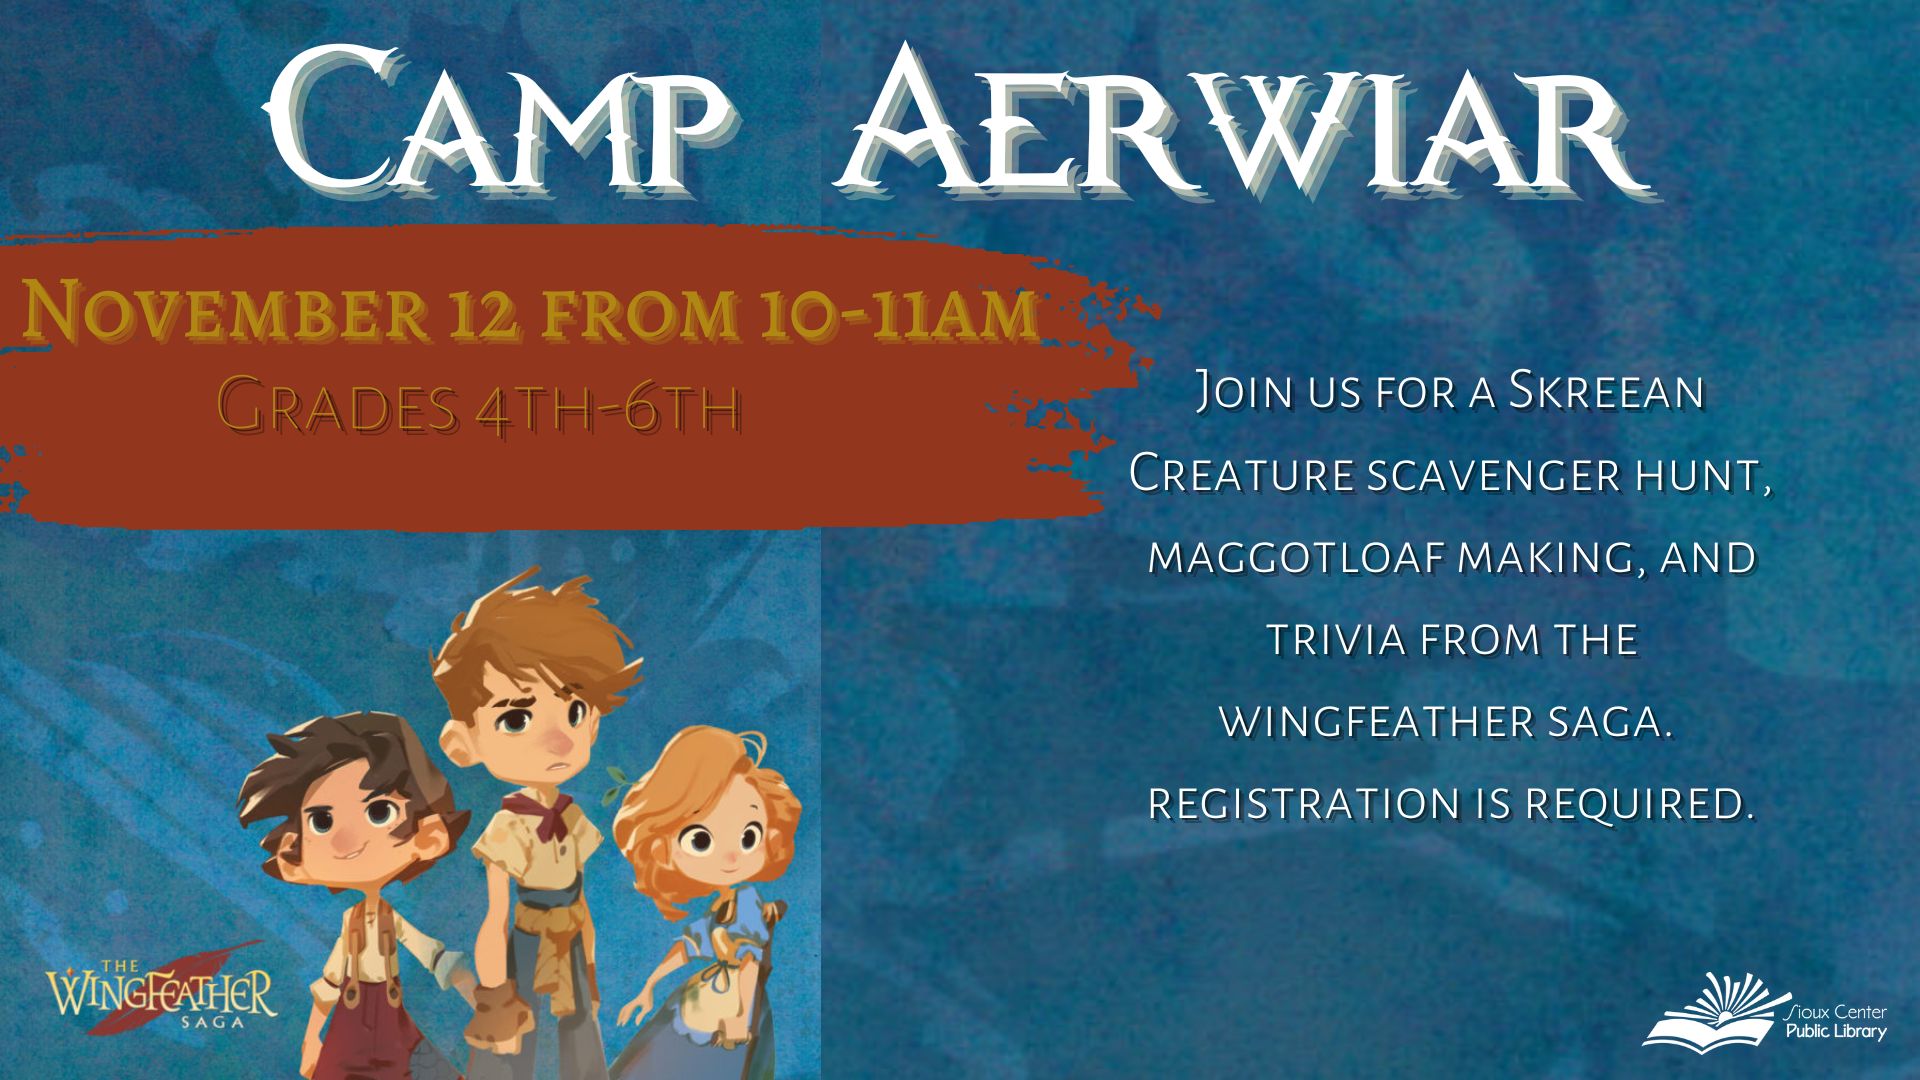 Camp Aerwiar